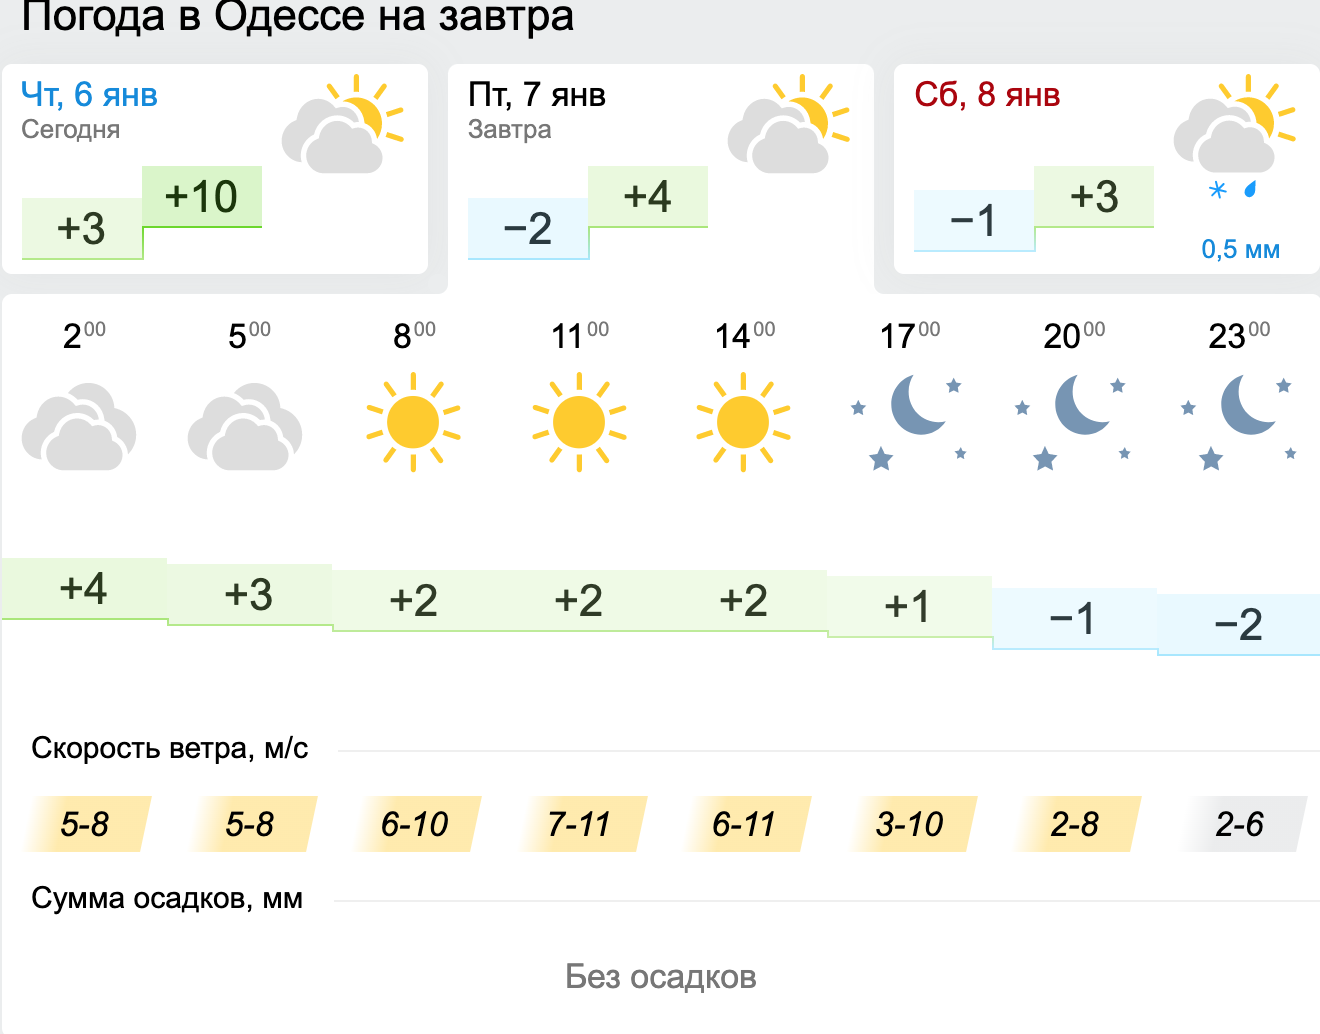 Погода в Одесі. Карта: Gismeteo